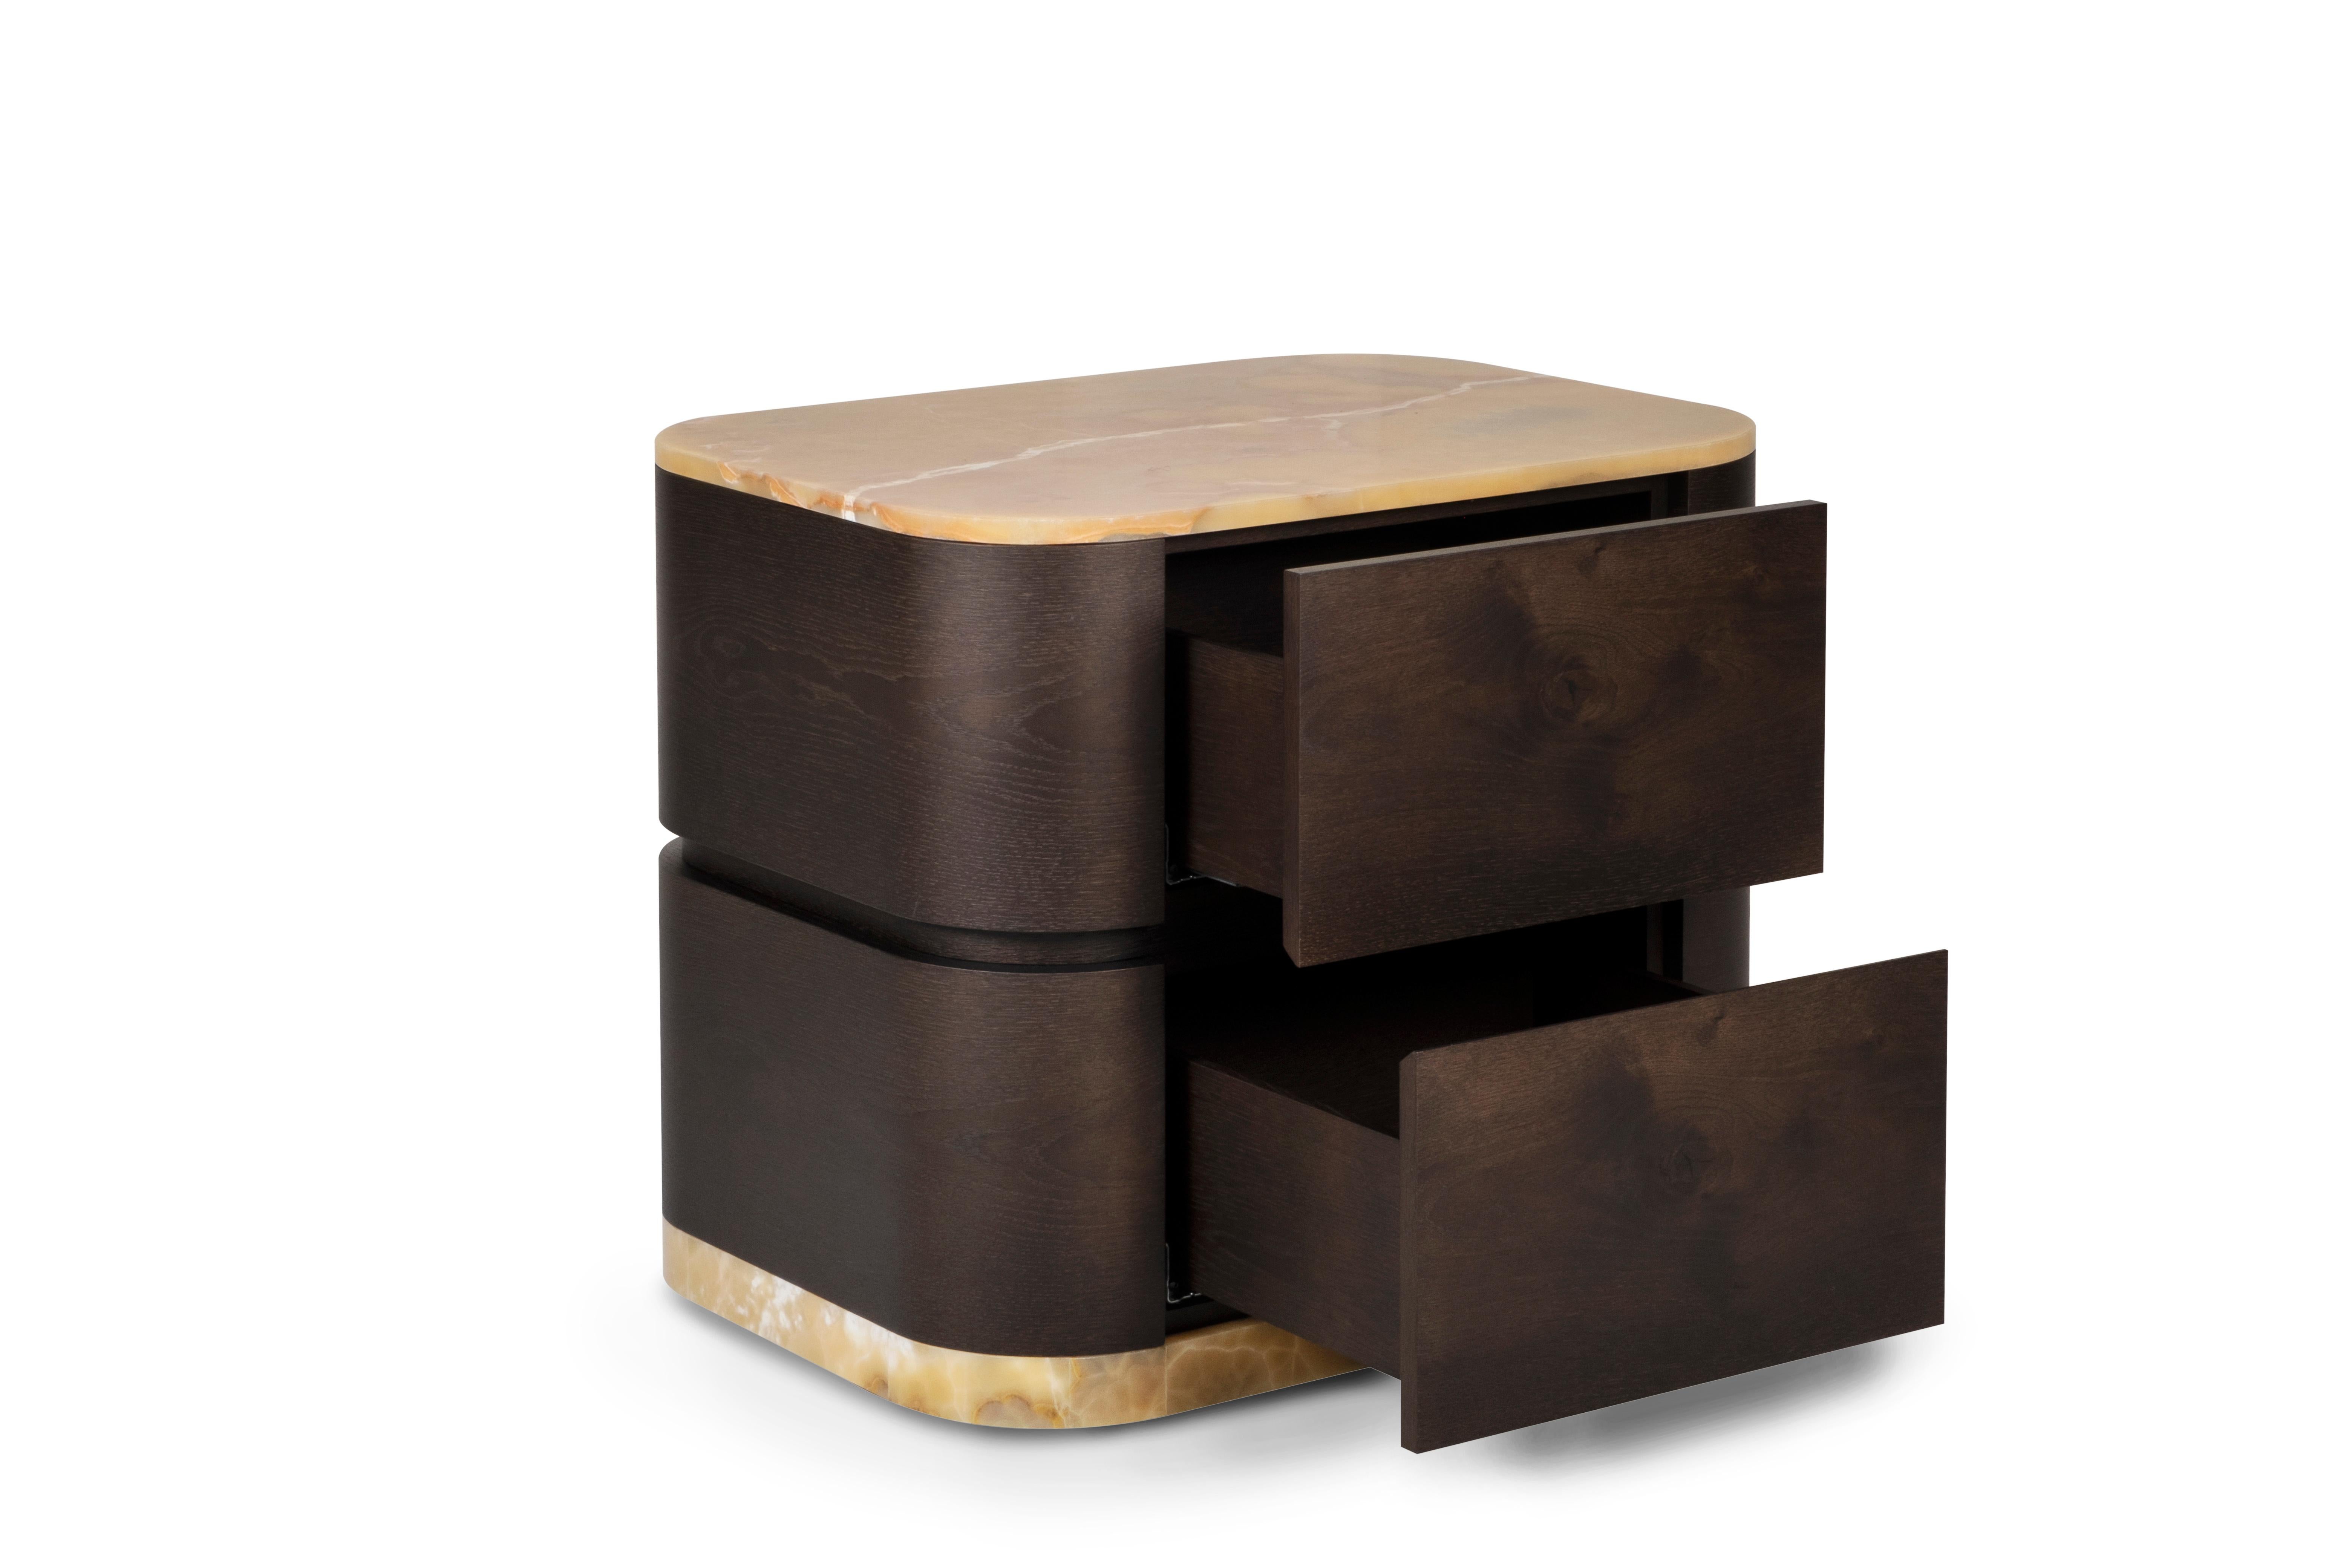 Baía Nachttisch, Modern Collection, handgefertigt in Portugal - Europa von Greenapple.

Das Nachttischchen Baía kombiniert nahtlos feine Handwerkskunst mit modernem Design. Aus dunkelbraunem Eichenwurzelholz und Miel Onyx gefertigt, wird Baía zu